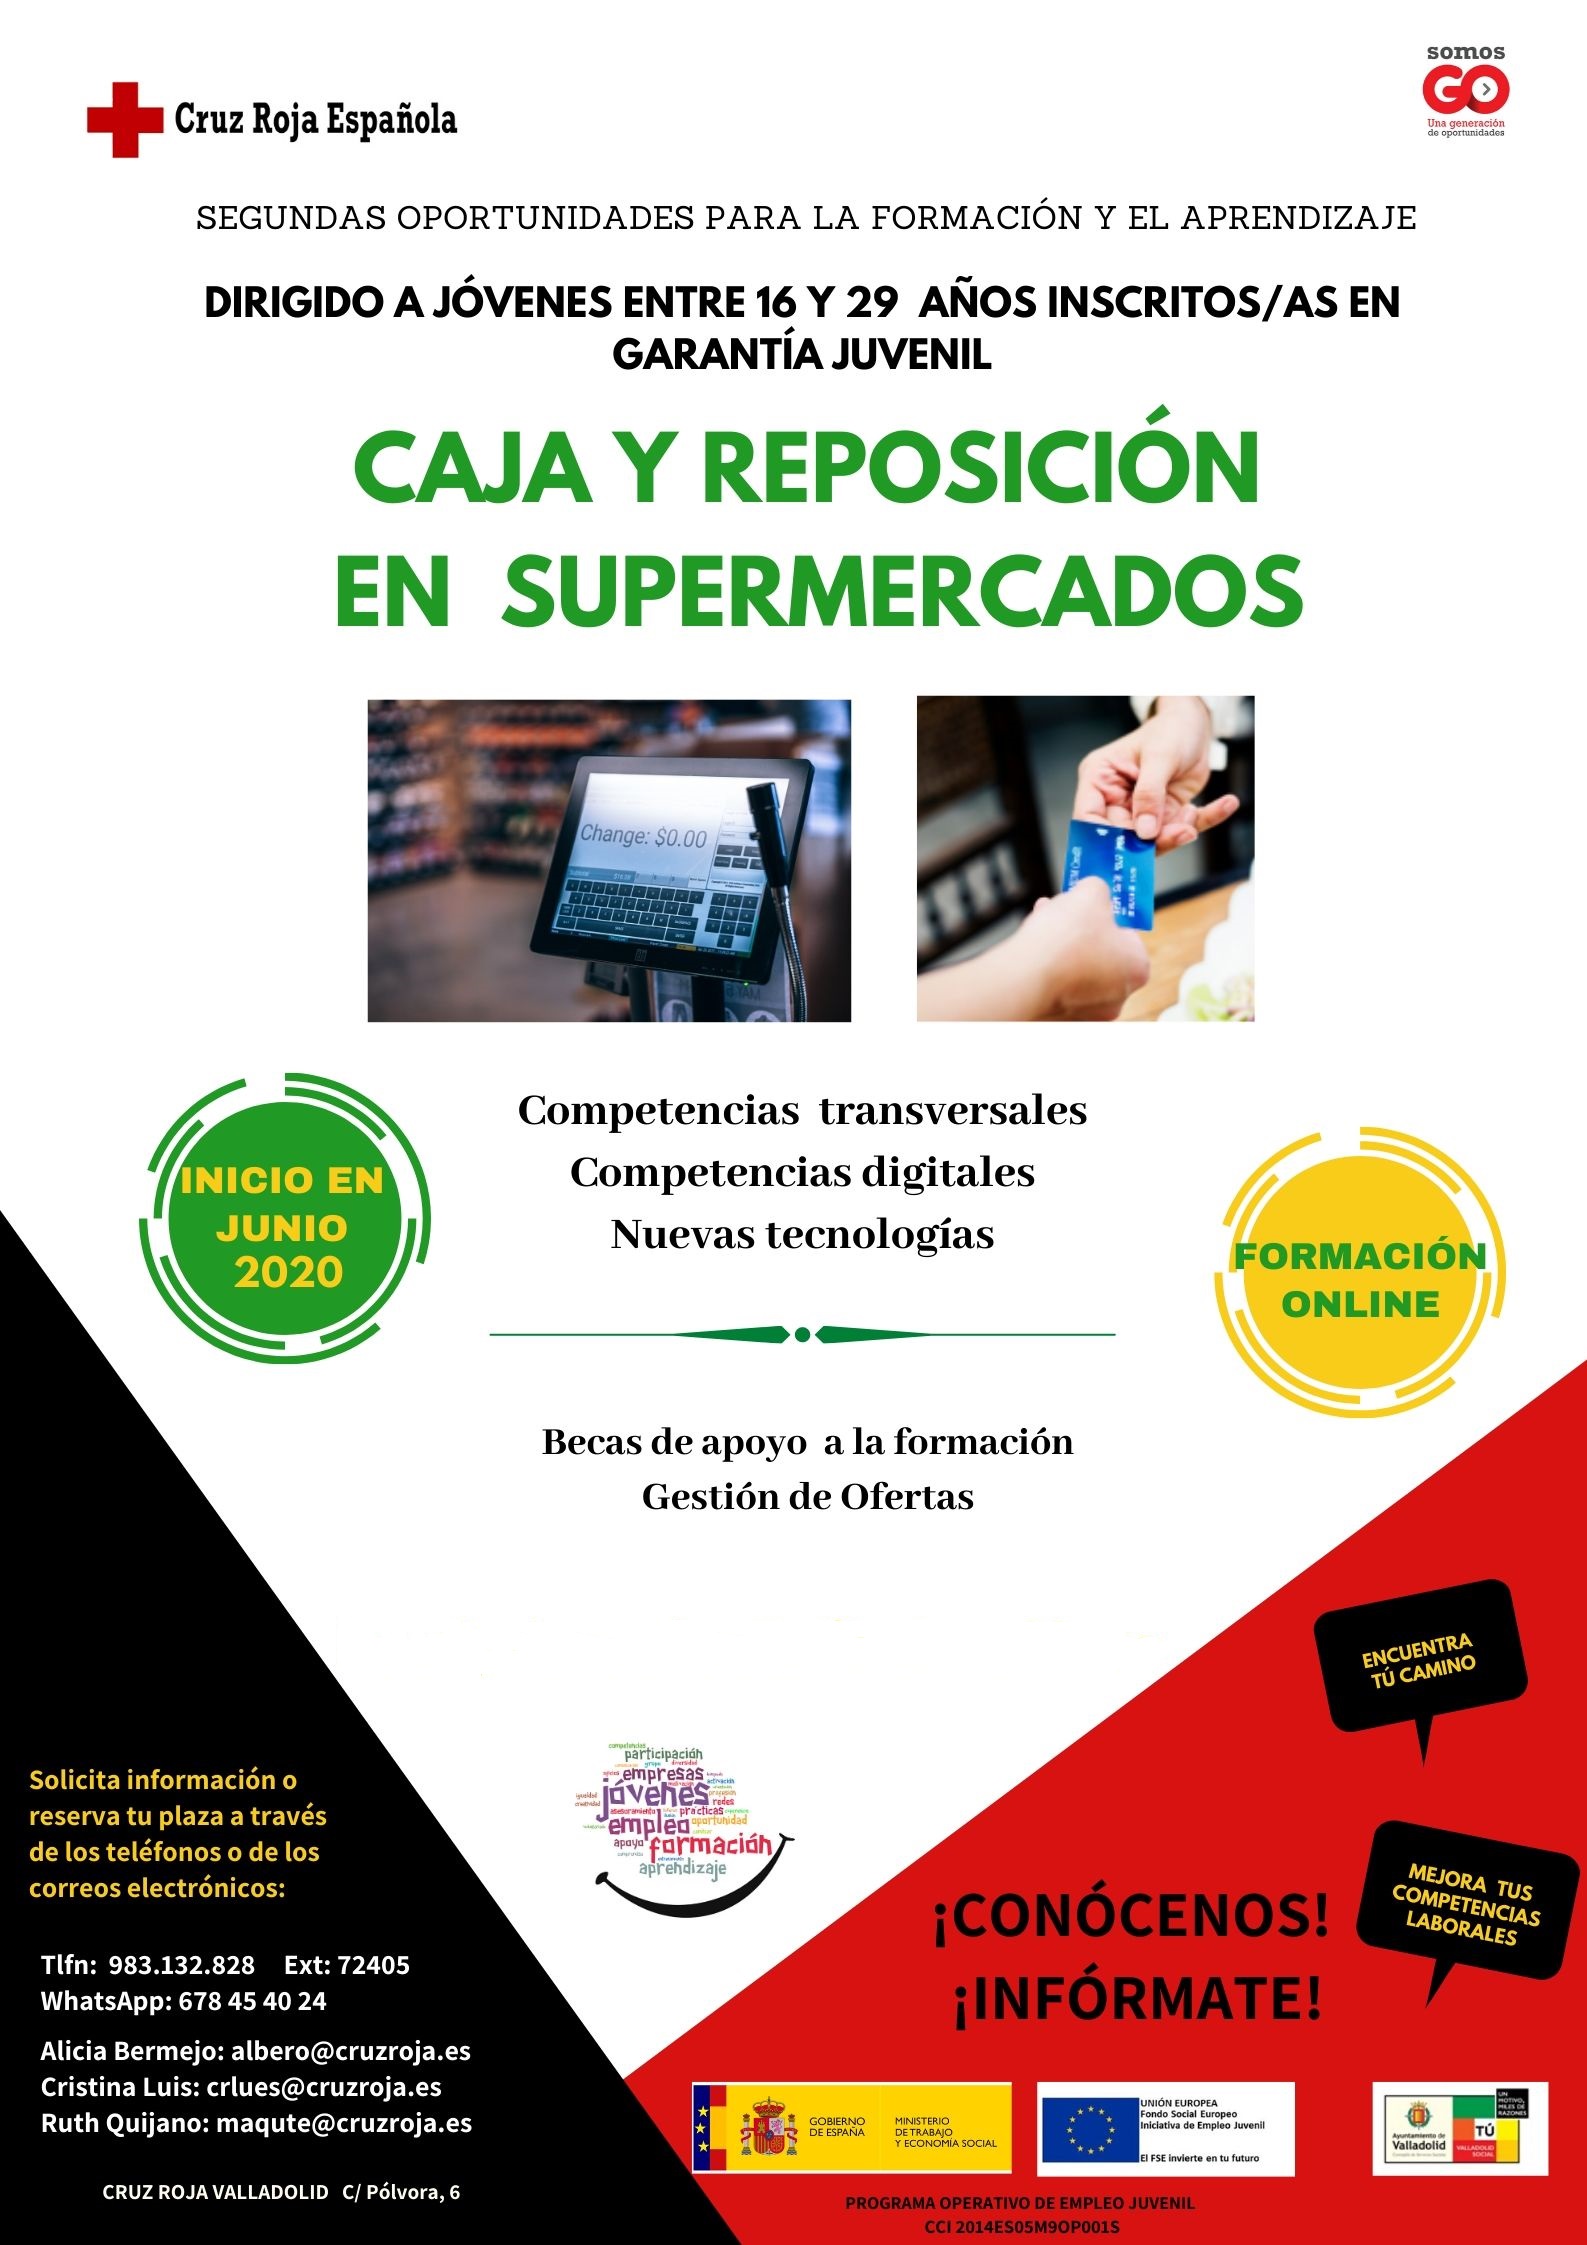 Cruz Roja en Valladolid organiza un curso gratuito on line `Curso de Caja y Reposición en Supermercados´